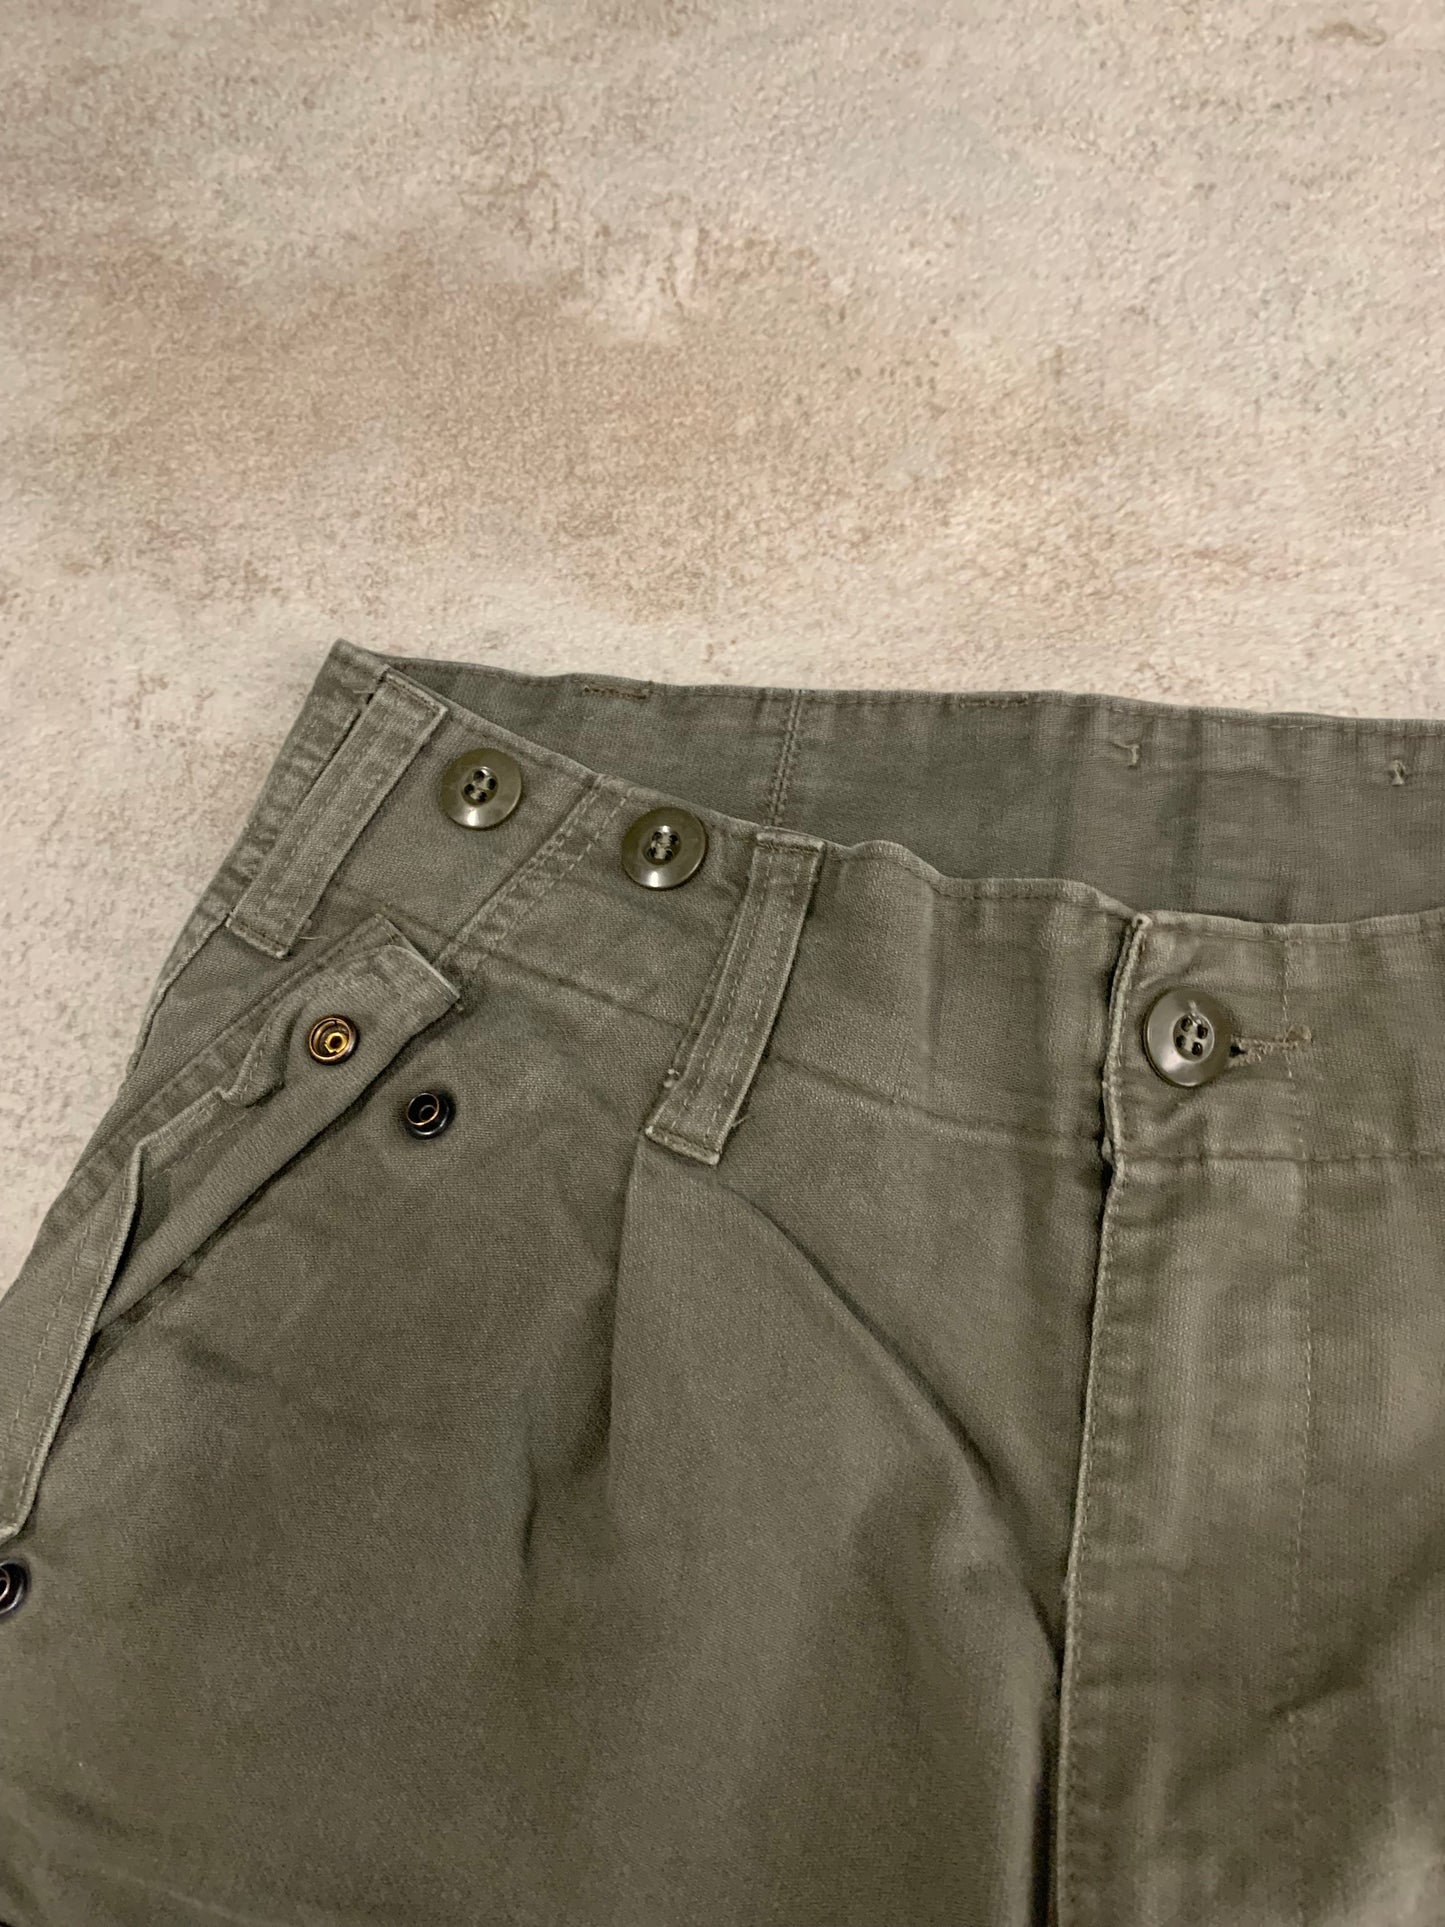 Vintage Olive Cargo Pants